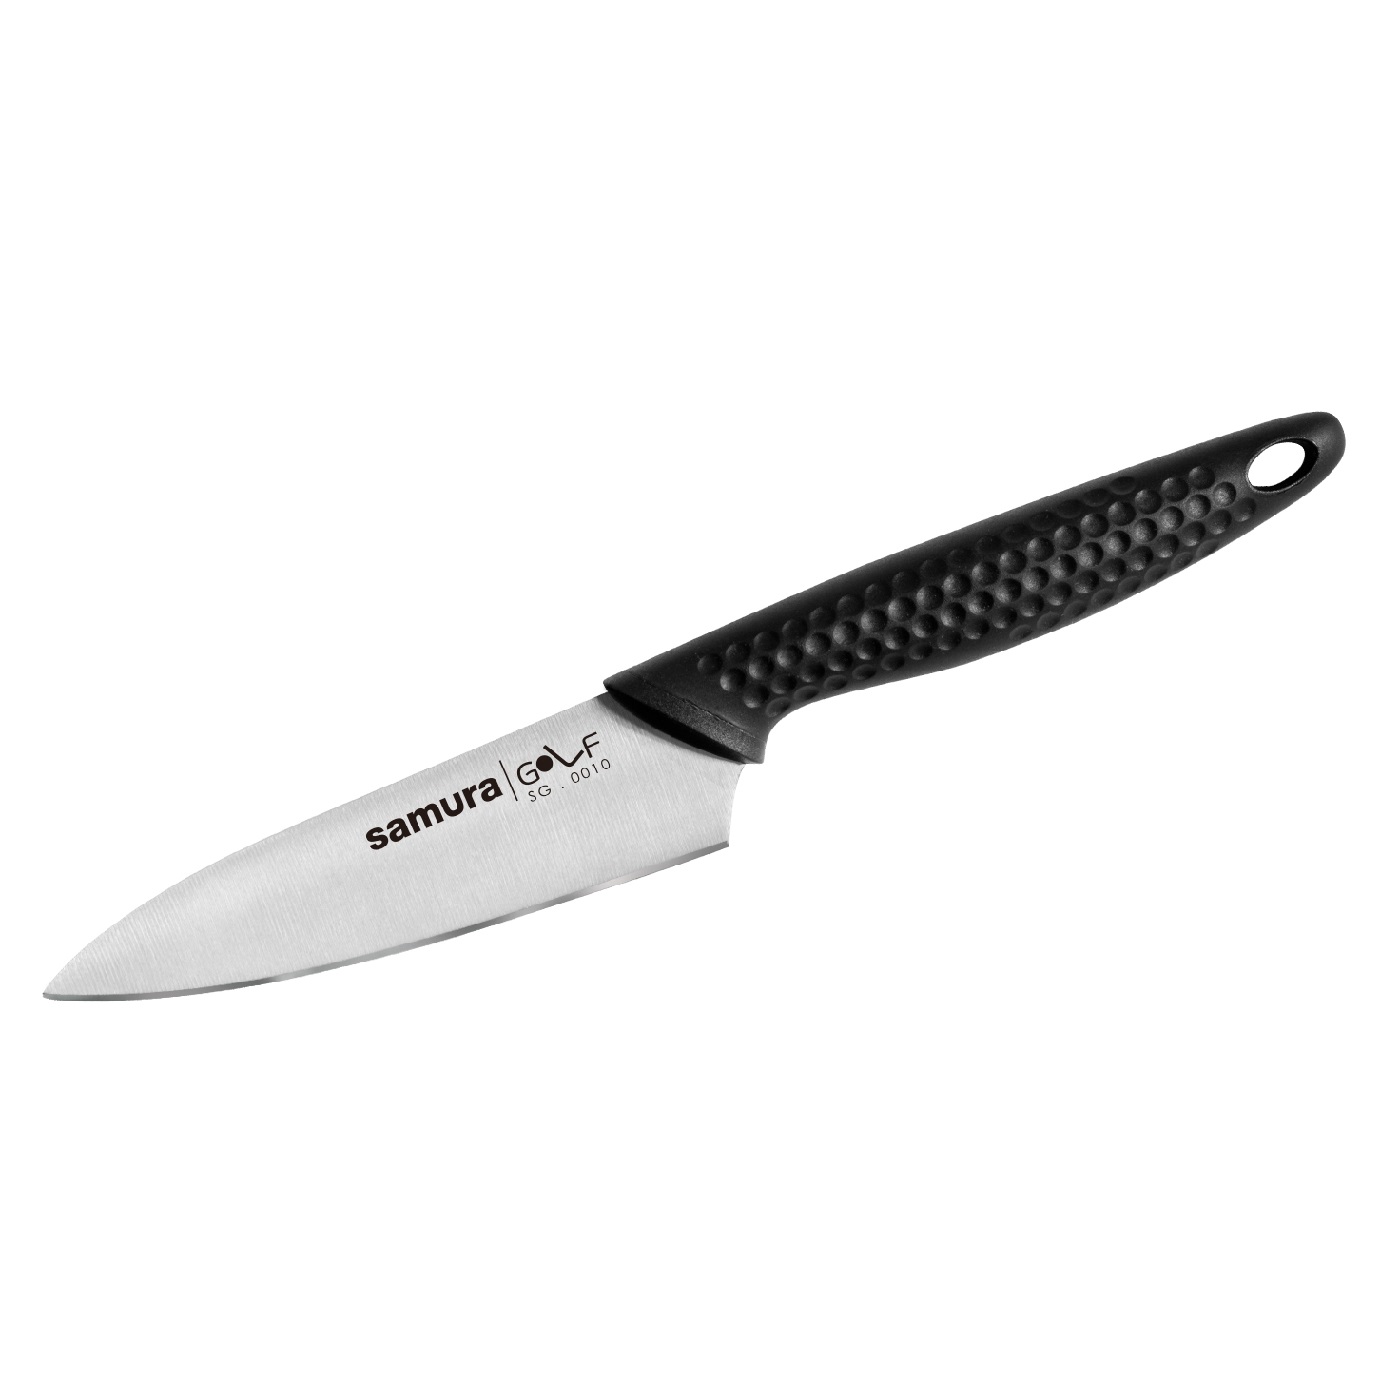 Нож Samura овощной Golf, 9,8 см, AUS-8 нож овощной golf stonewash 9 8 см sg 0010b k samura